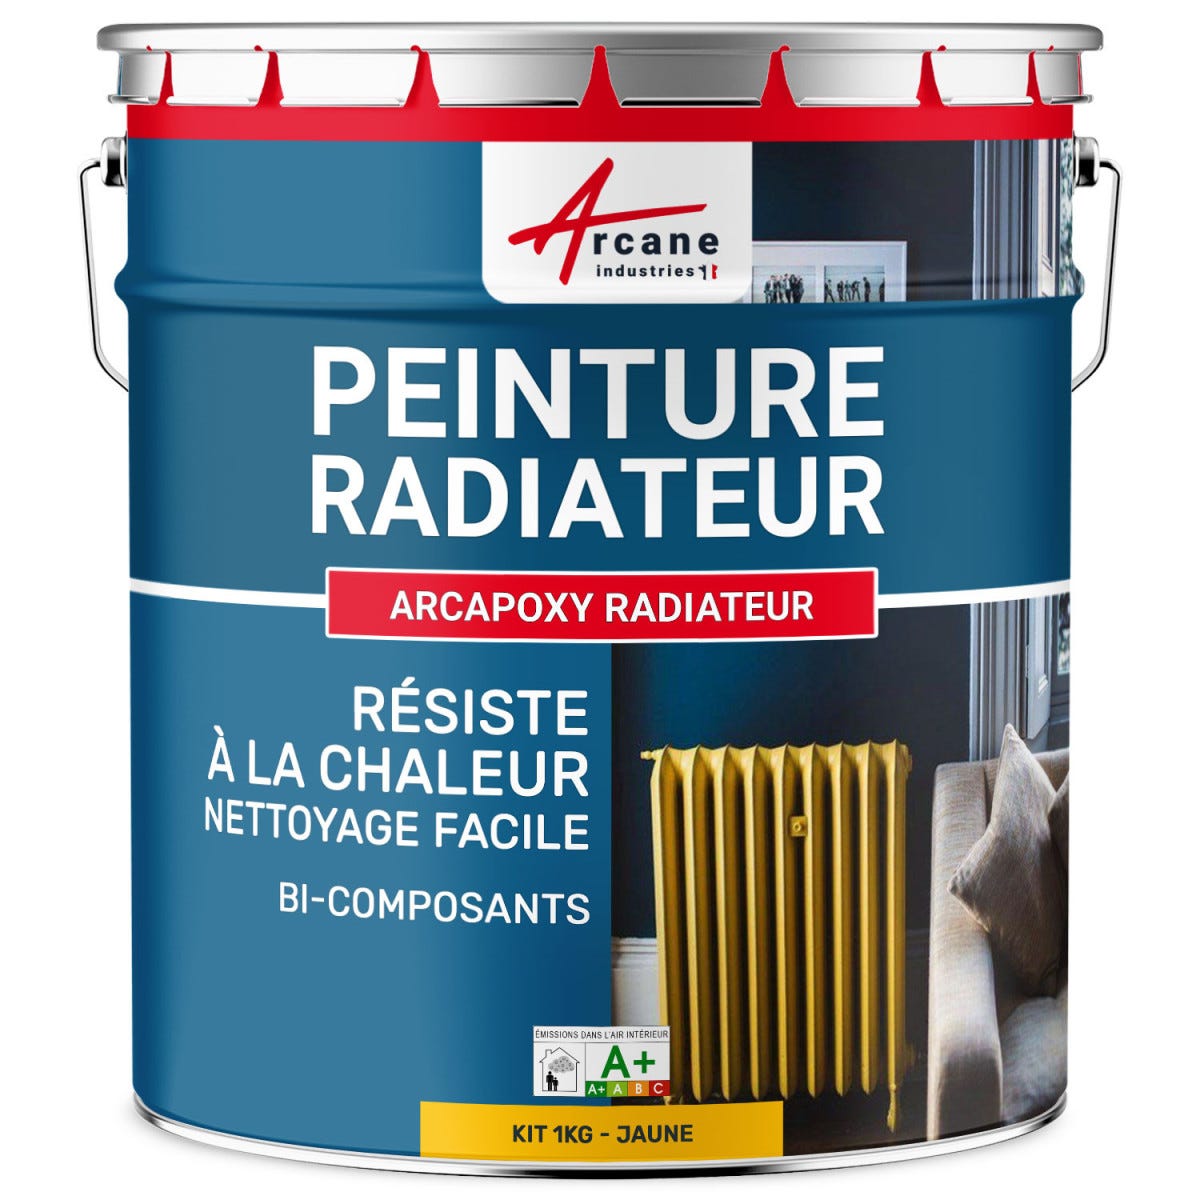 Peinture Radiateur fonte acier alu - PEINTURE RADIATEUR - 1 kg (jusqu'à 5 m² en 2 couches) - Jaune - RAL 1023 - ARCANE INDUSTRIES 0